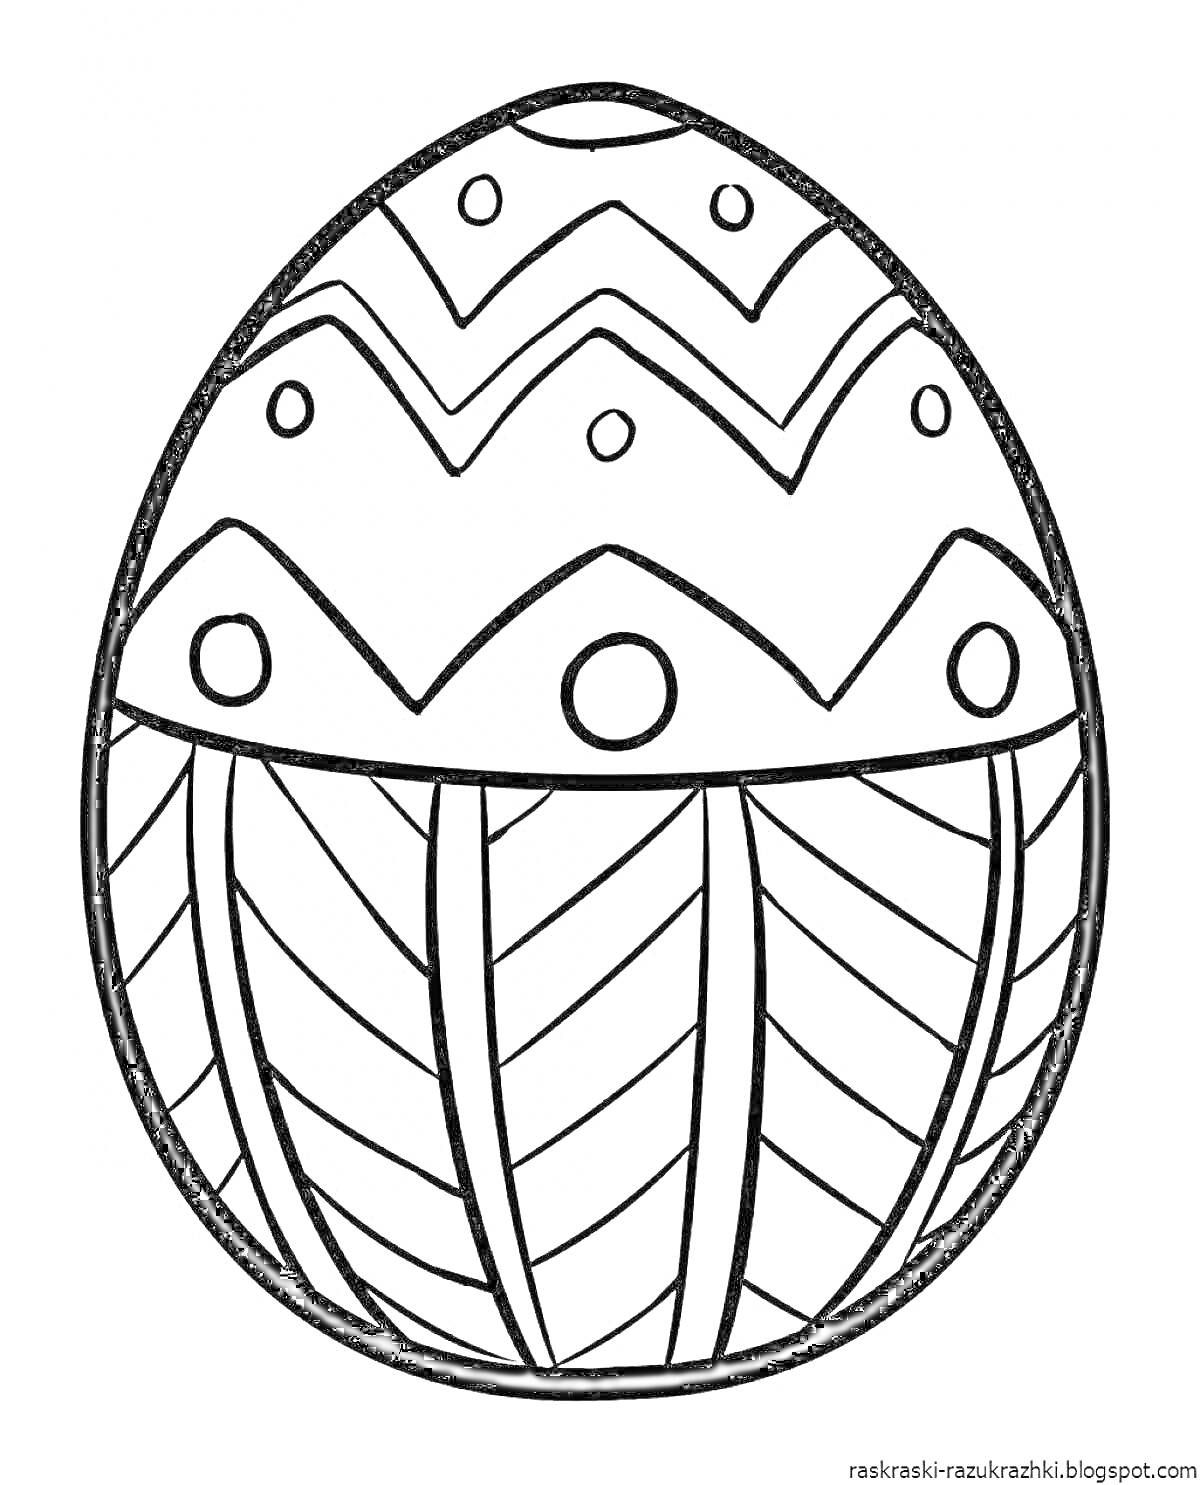 Раскраска Пасхальное яйцо с разноуровневым узором: зигзаги, кружочки и диагональные линии.